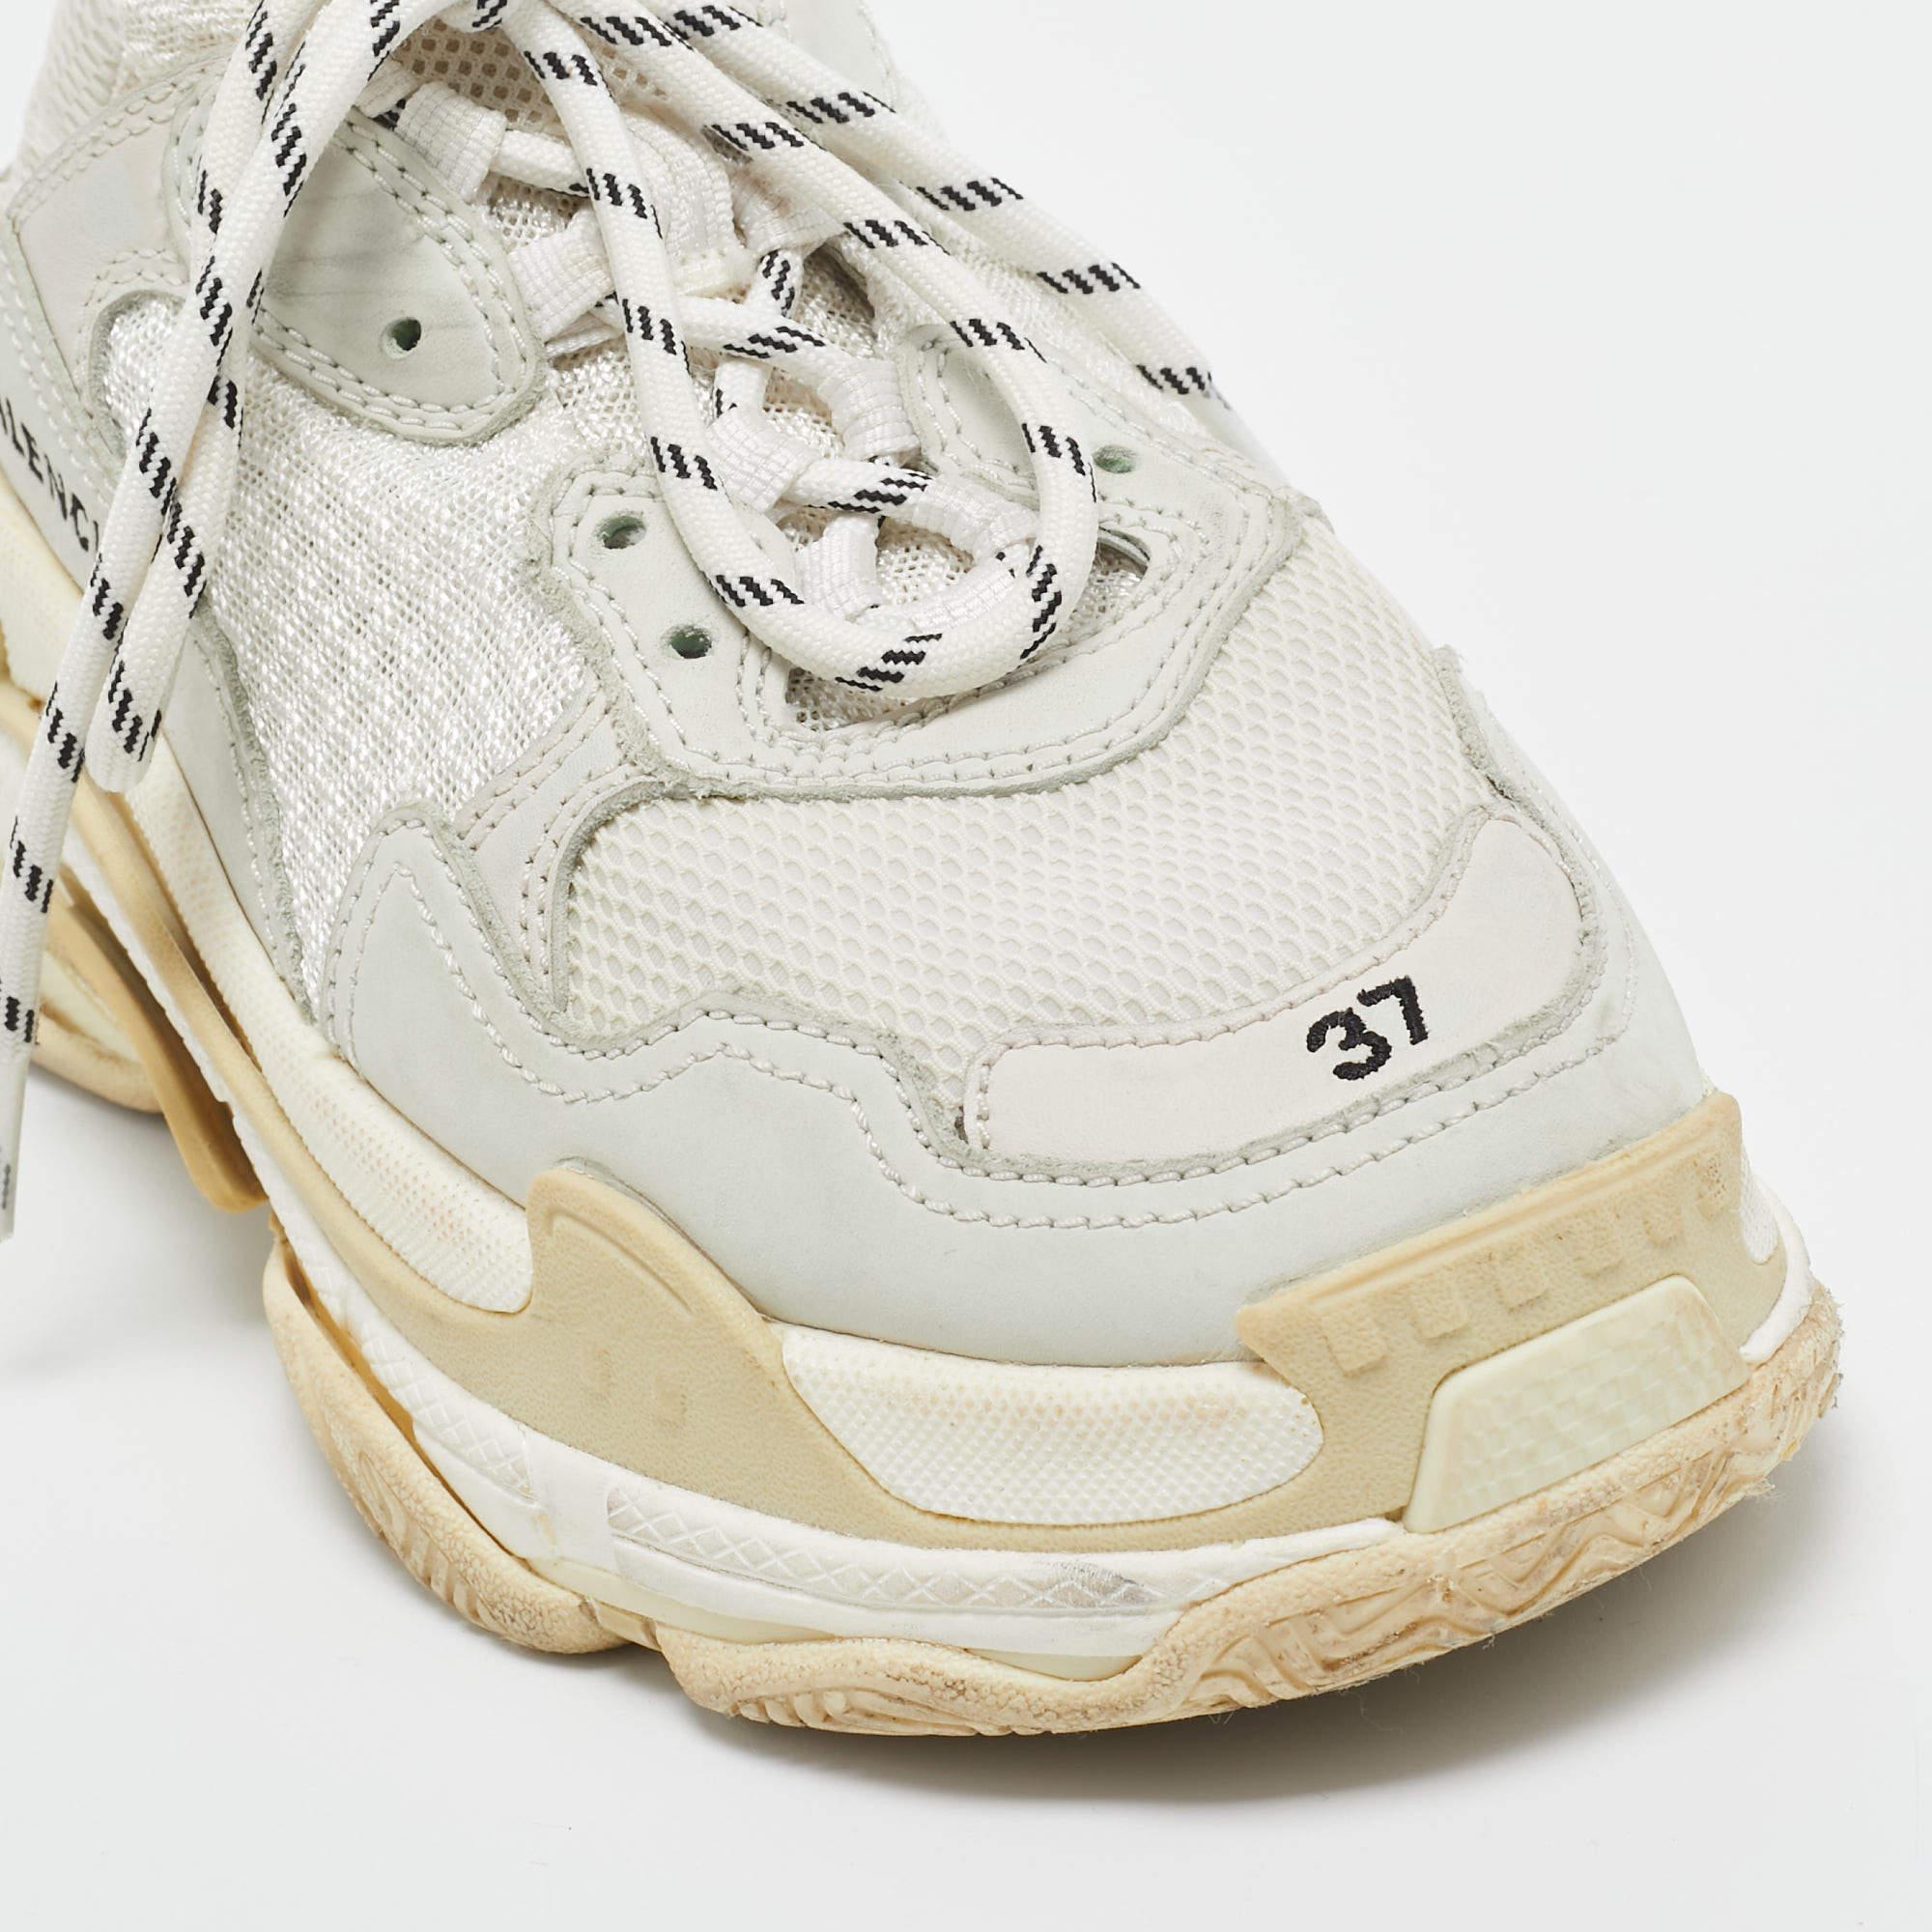 Élevez votre jeu de chaussures avec ces baskets Balenciaga. Alliant esthétique haut de gamme et confort inégalé, ces baskets sont le symbole d'un luxe moderne et d'un goût irréprochable.

